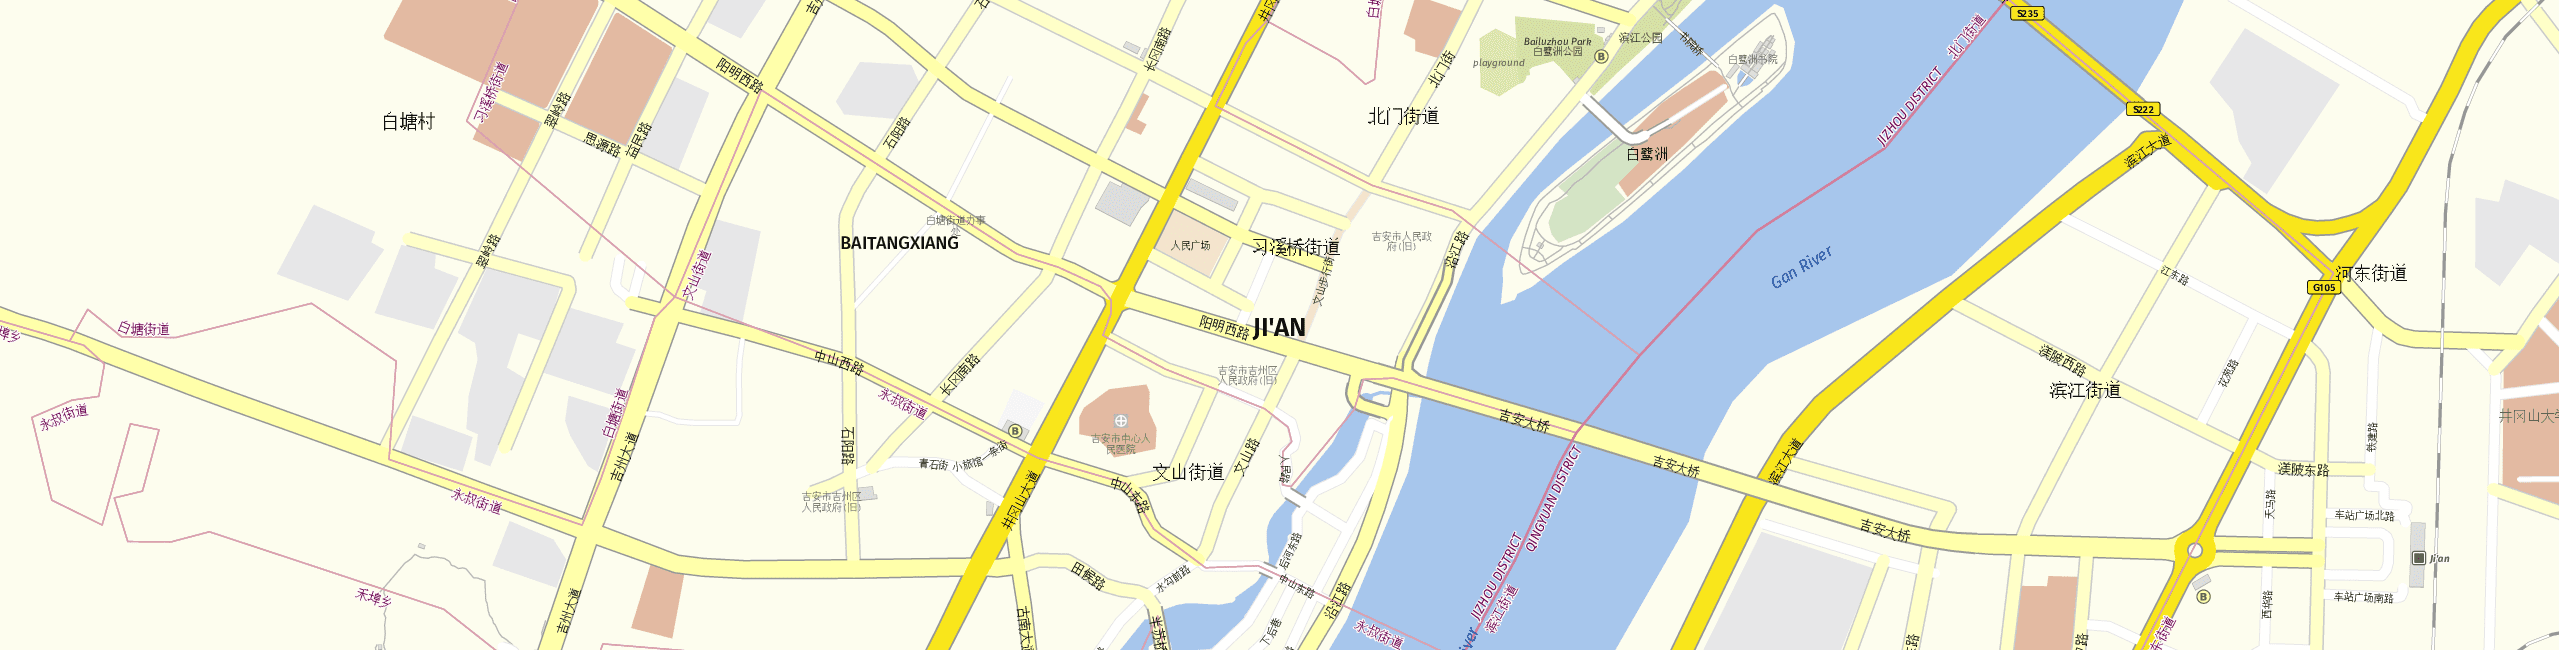 Stadtplan Ji'an zum Downloaden.